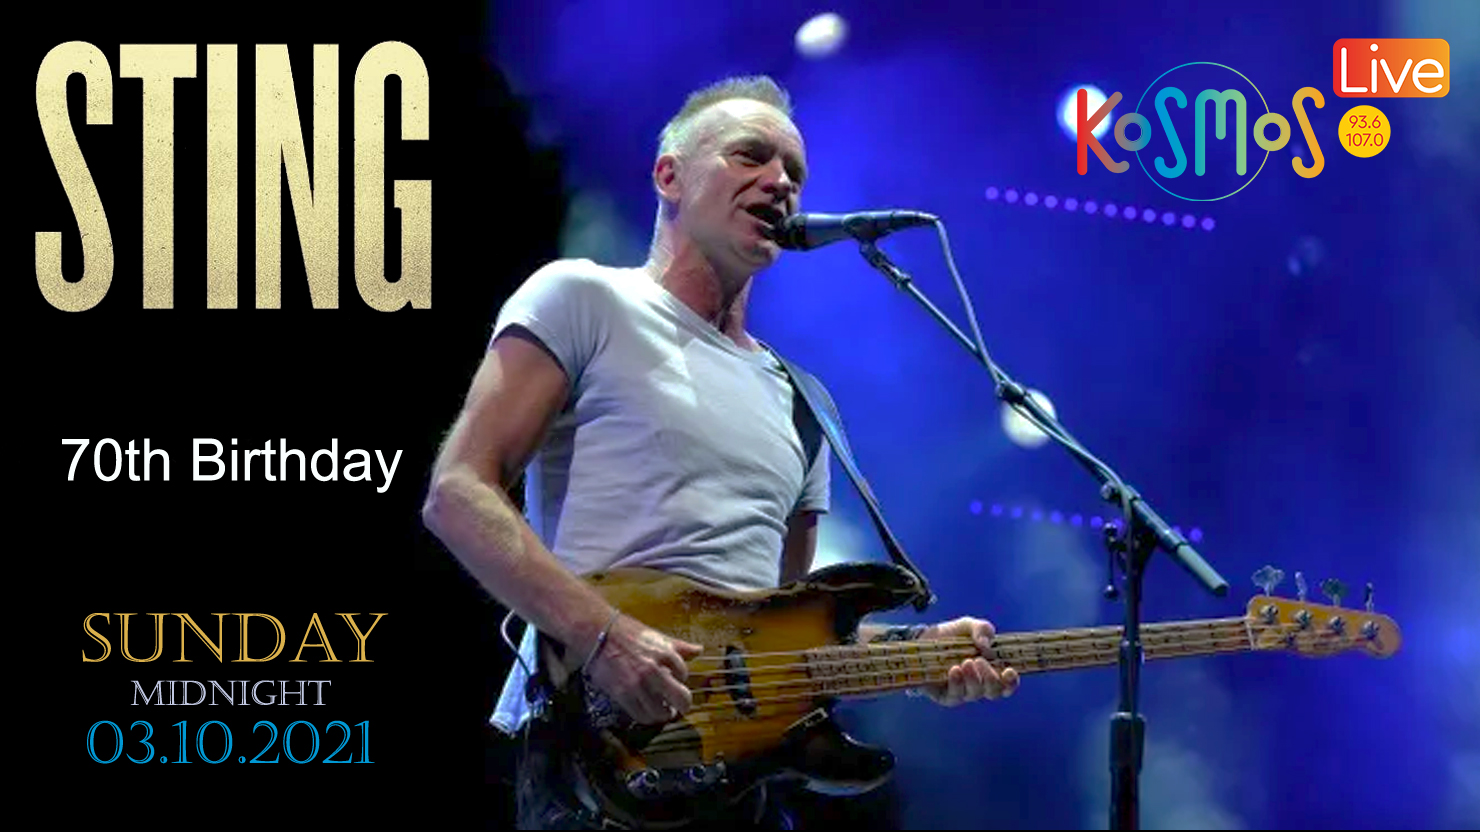 Ακούστε το live του Sting από το Paléo Festival στη Nyon της Ελβετίας (Μεταδόθηκε 03.10.21)